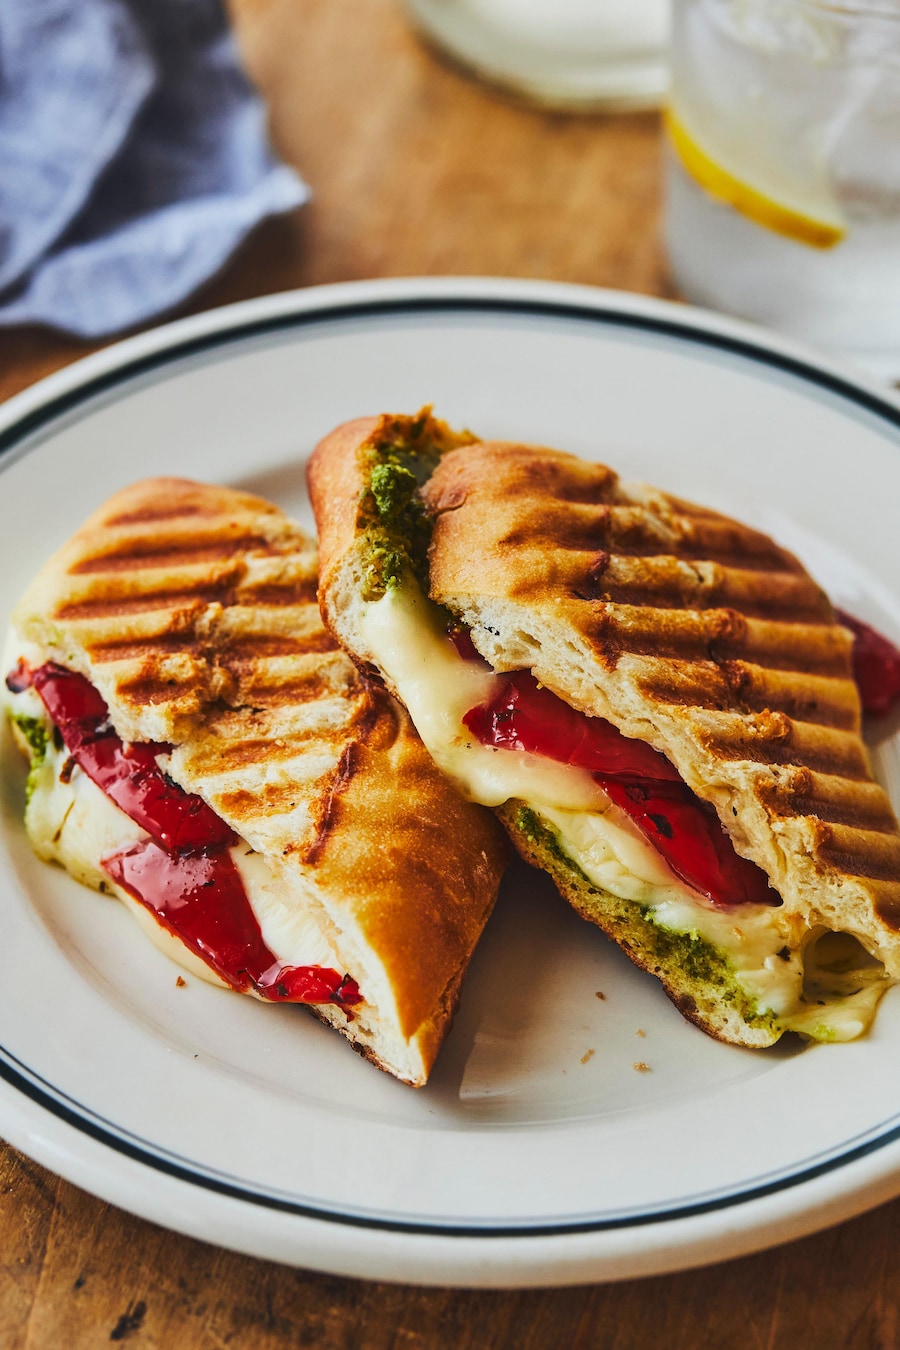 Dans une assiette, un panini à l'italienne tranché au milieu. 